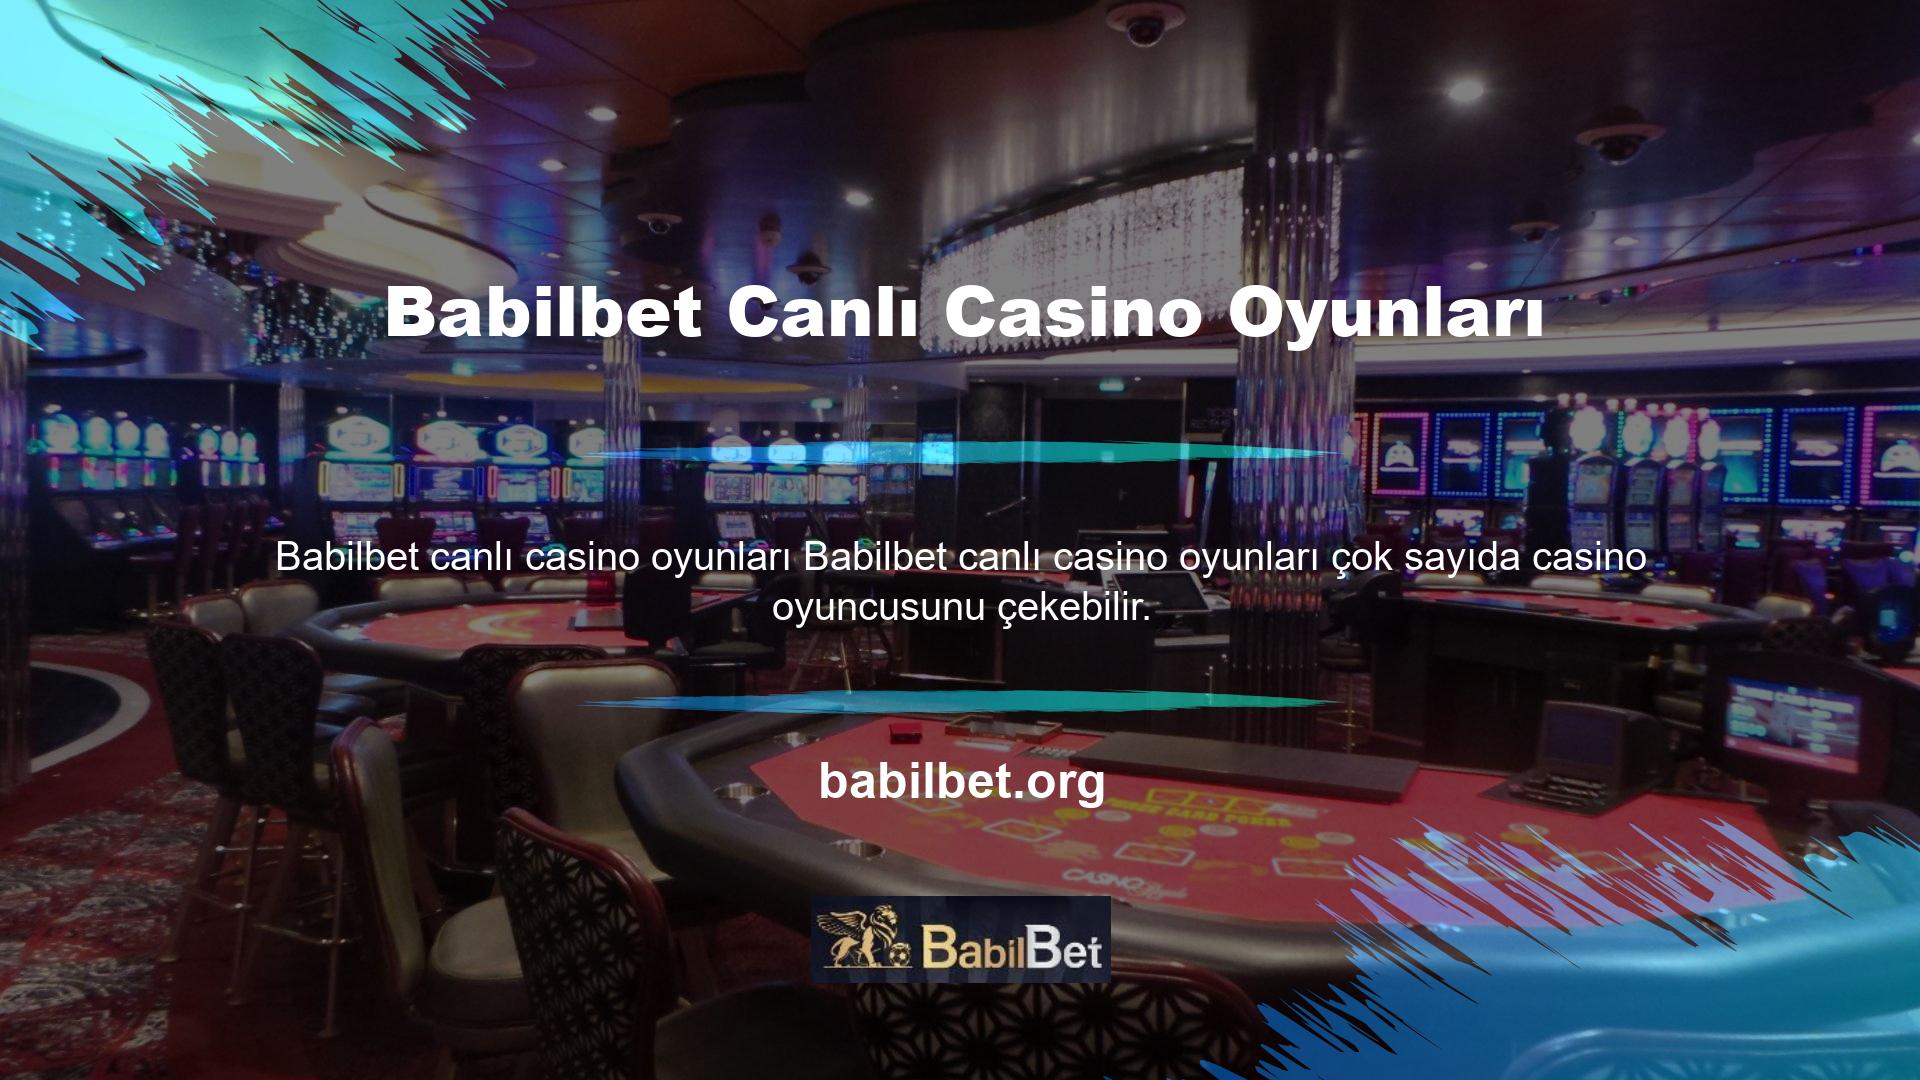 Canlı Casino adlı her türlü oyun ve dahası Babilbet yeni giriş adresinde sizleri bekliyor